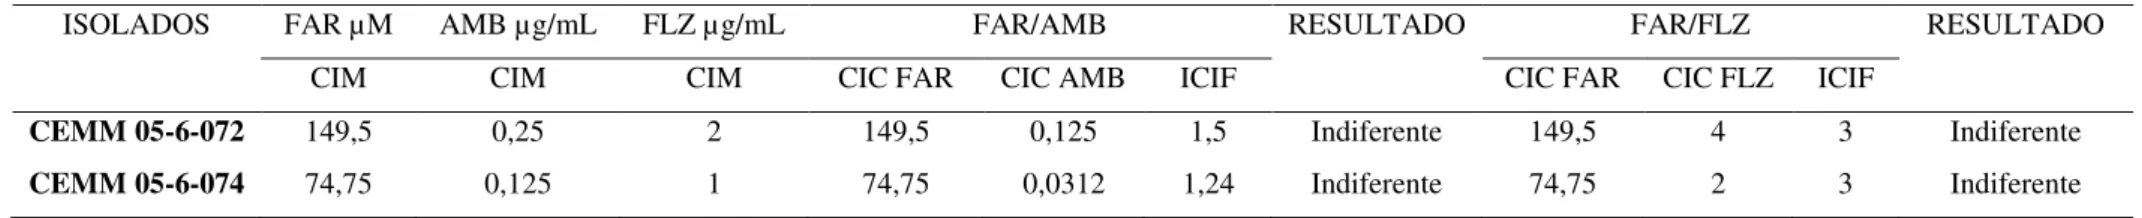 Tabela 3: Interação do farnesol com anfotericina B e fluconazol para T. asahii e T. inkin 